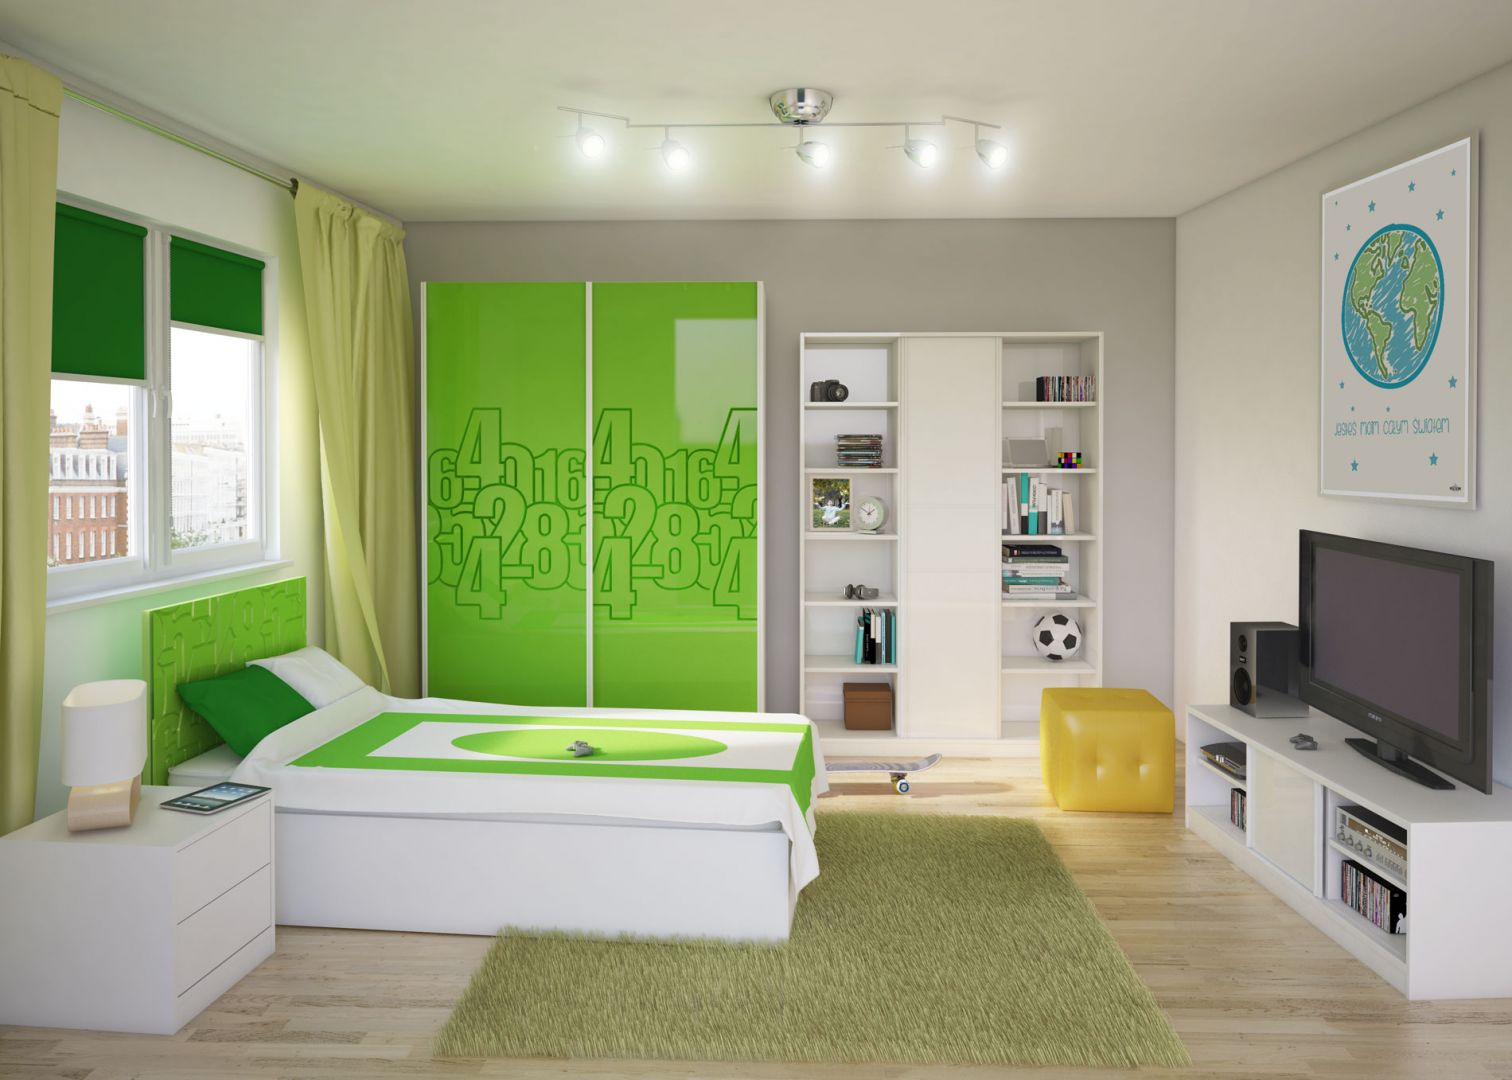 Białe łóżko z zielonym wezgłowiem wygląda modnie i wprowadza radosny nastrój. Fot. Miretto